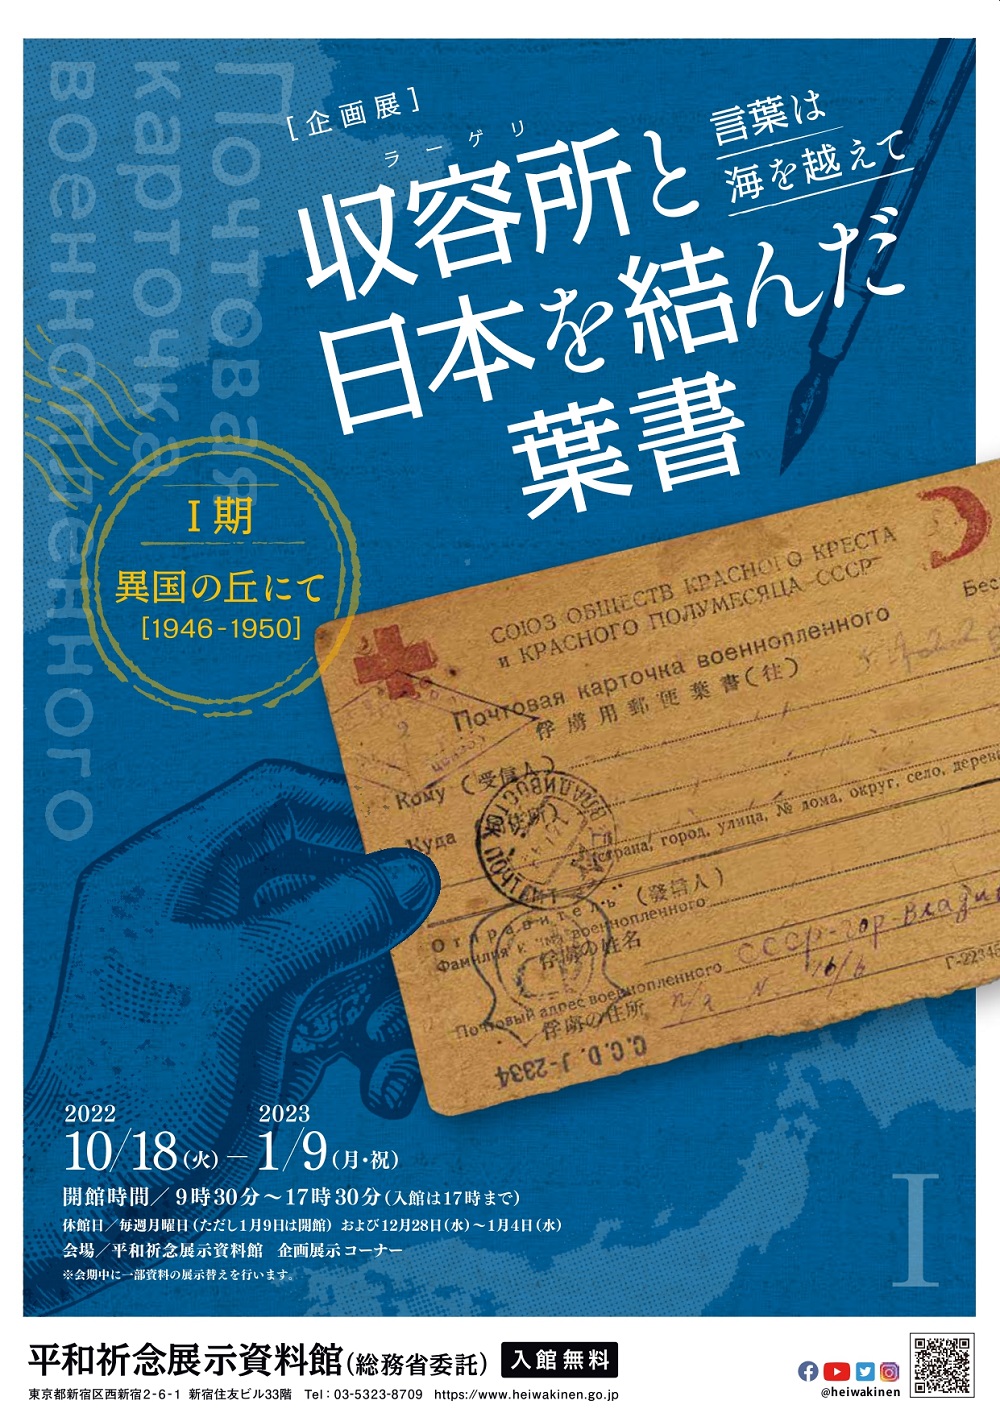 西新宿・平和祈念展示資料館：ソ連の収容所から届いた葉書を読み解く企画展！10月18日(火)から開催